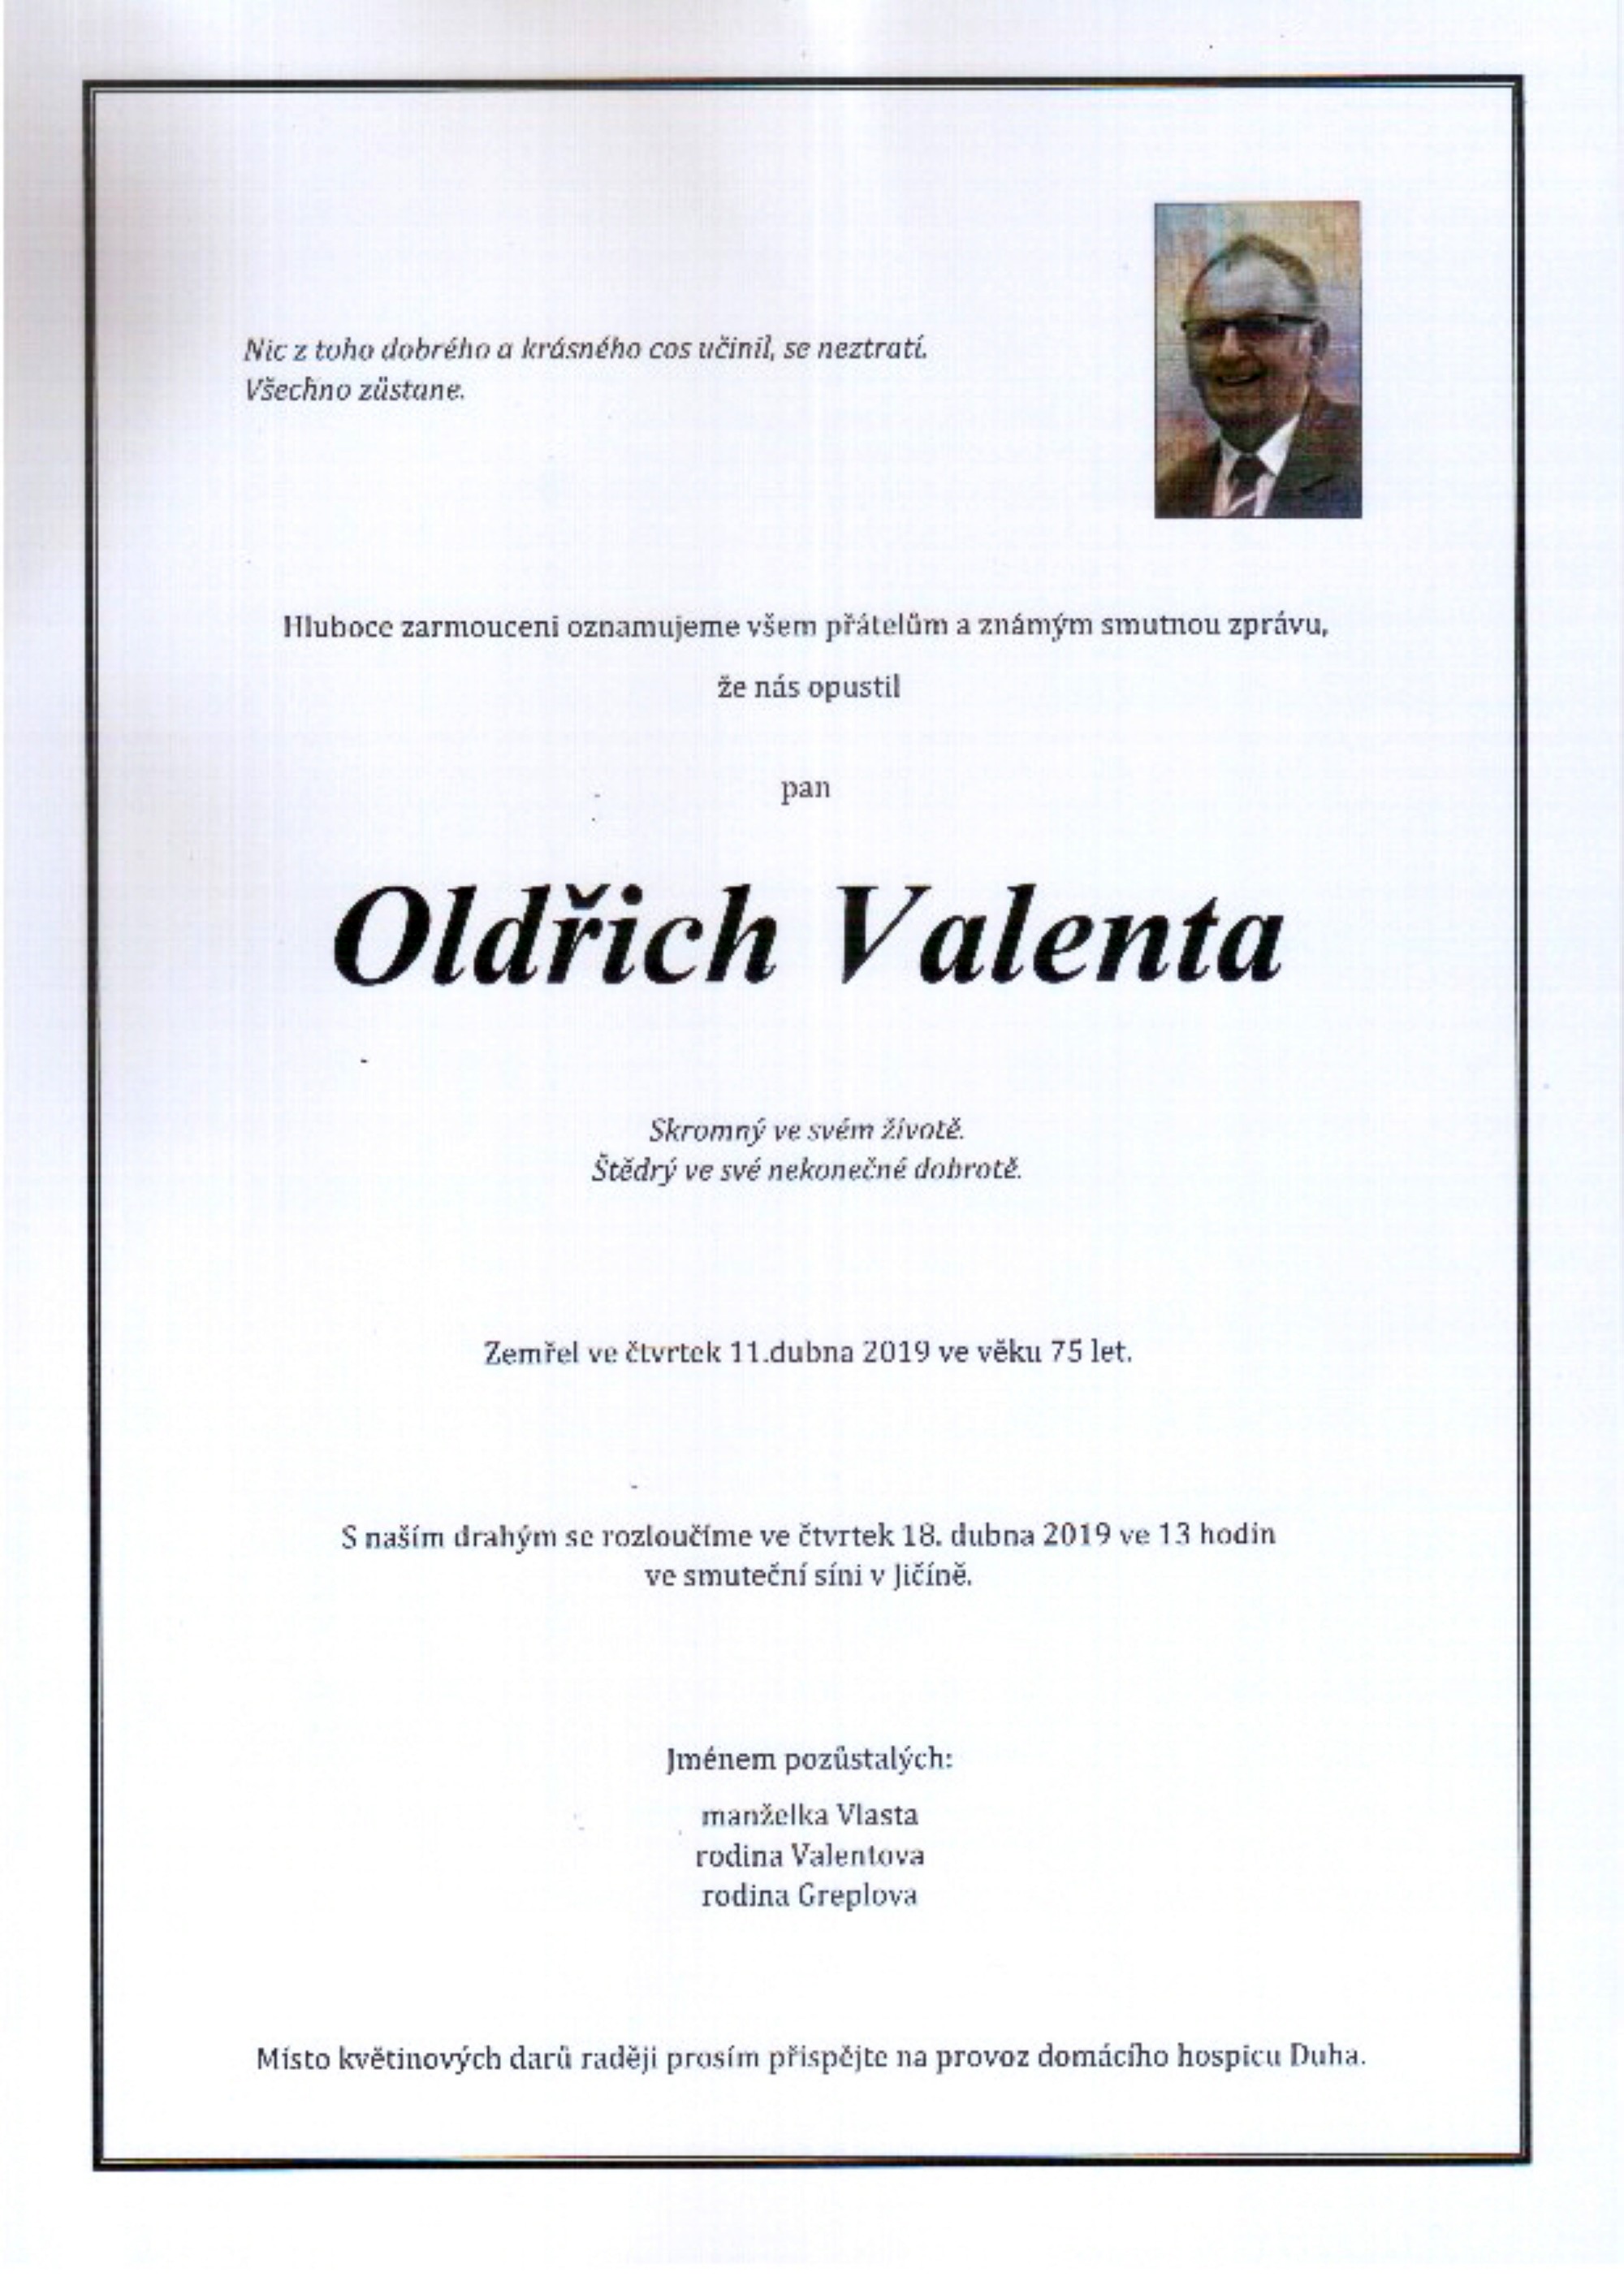 Oldřich Valenta